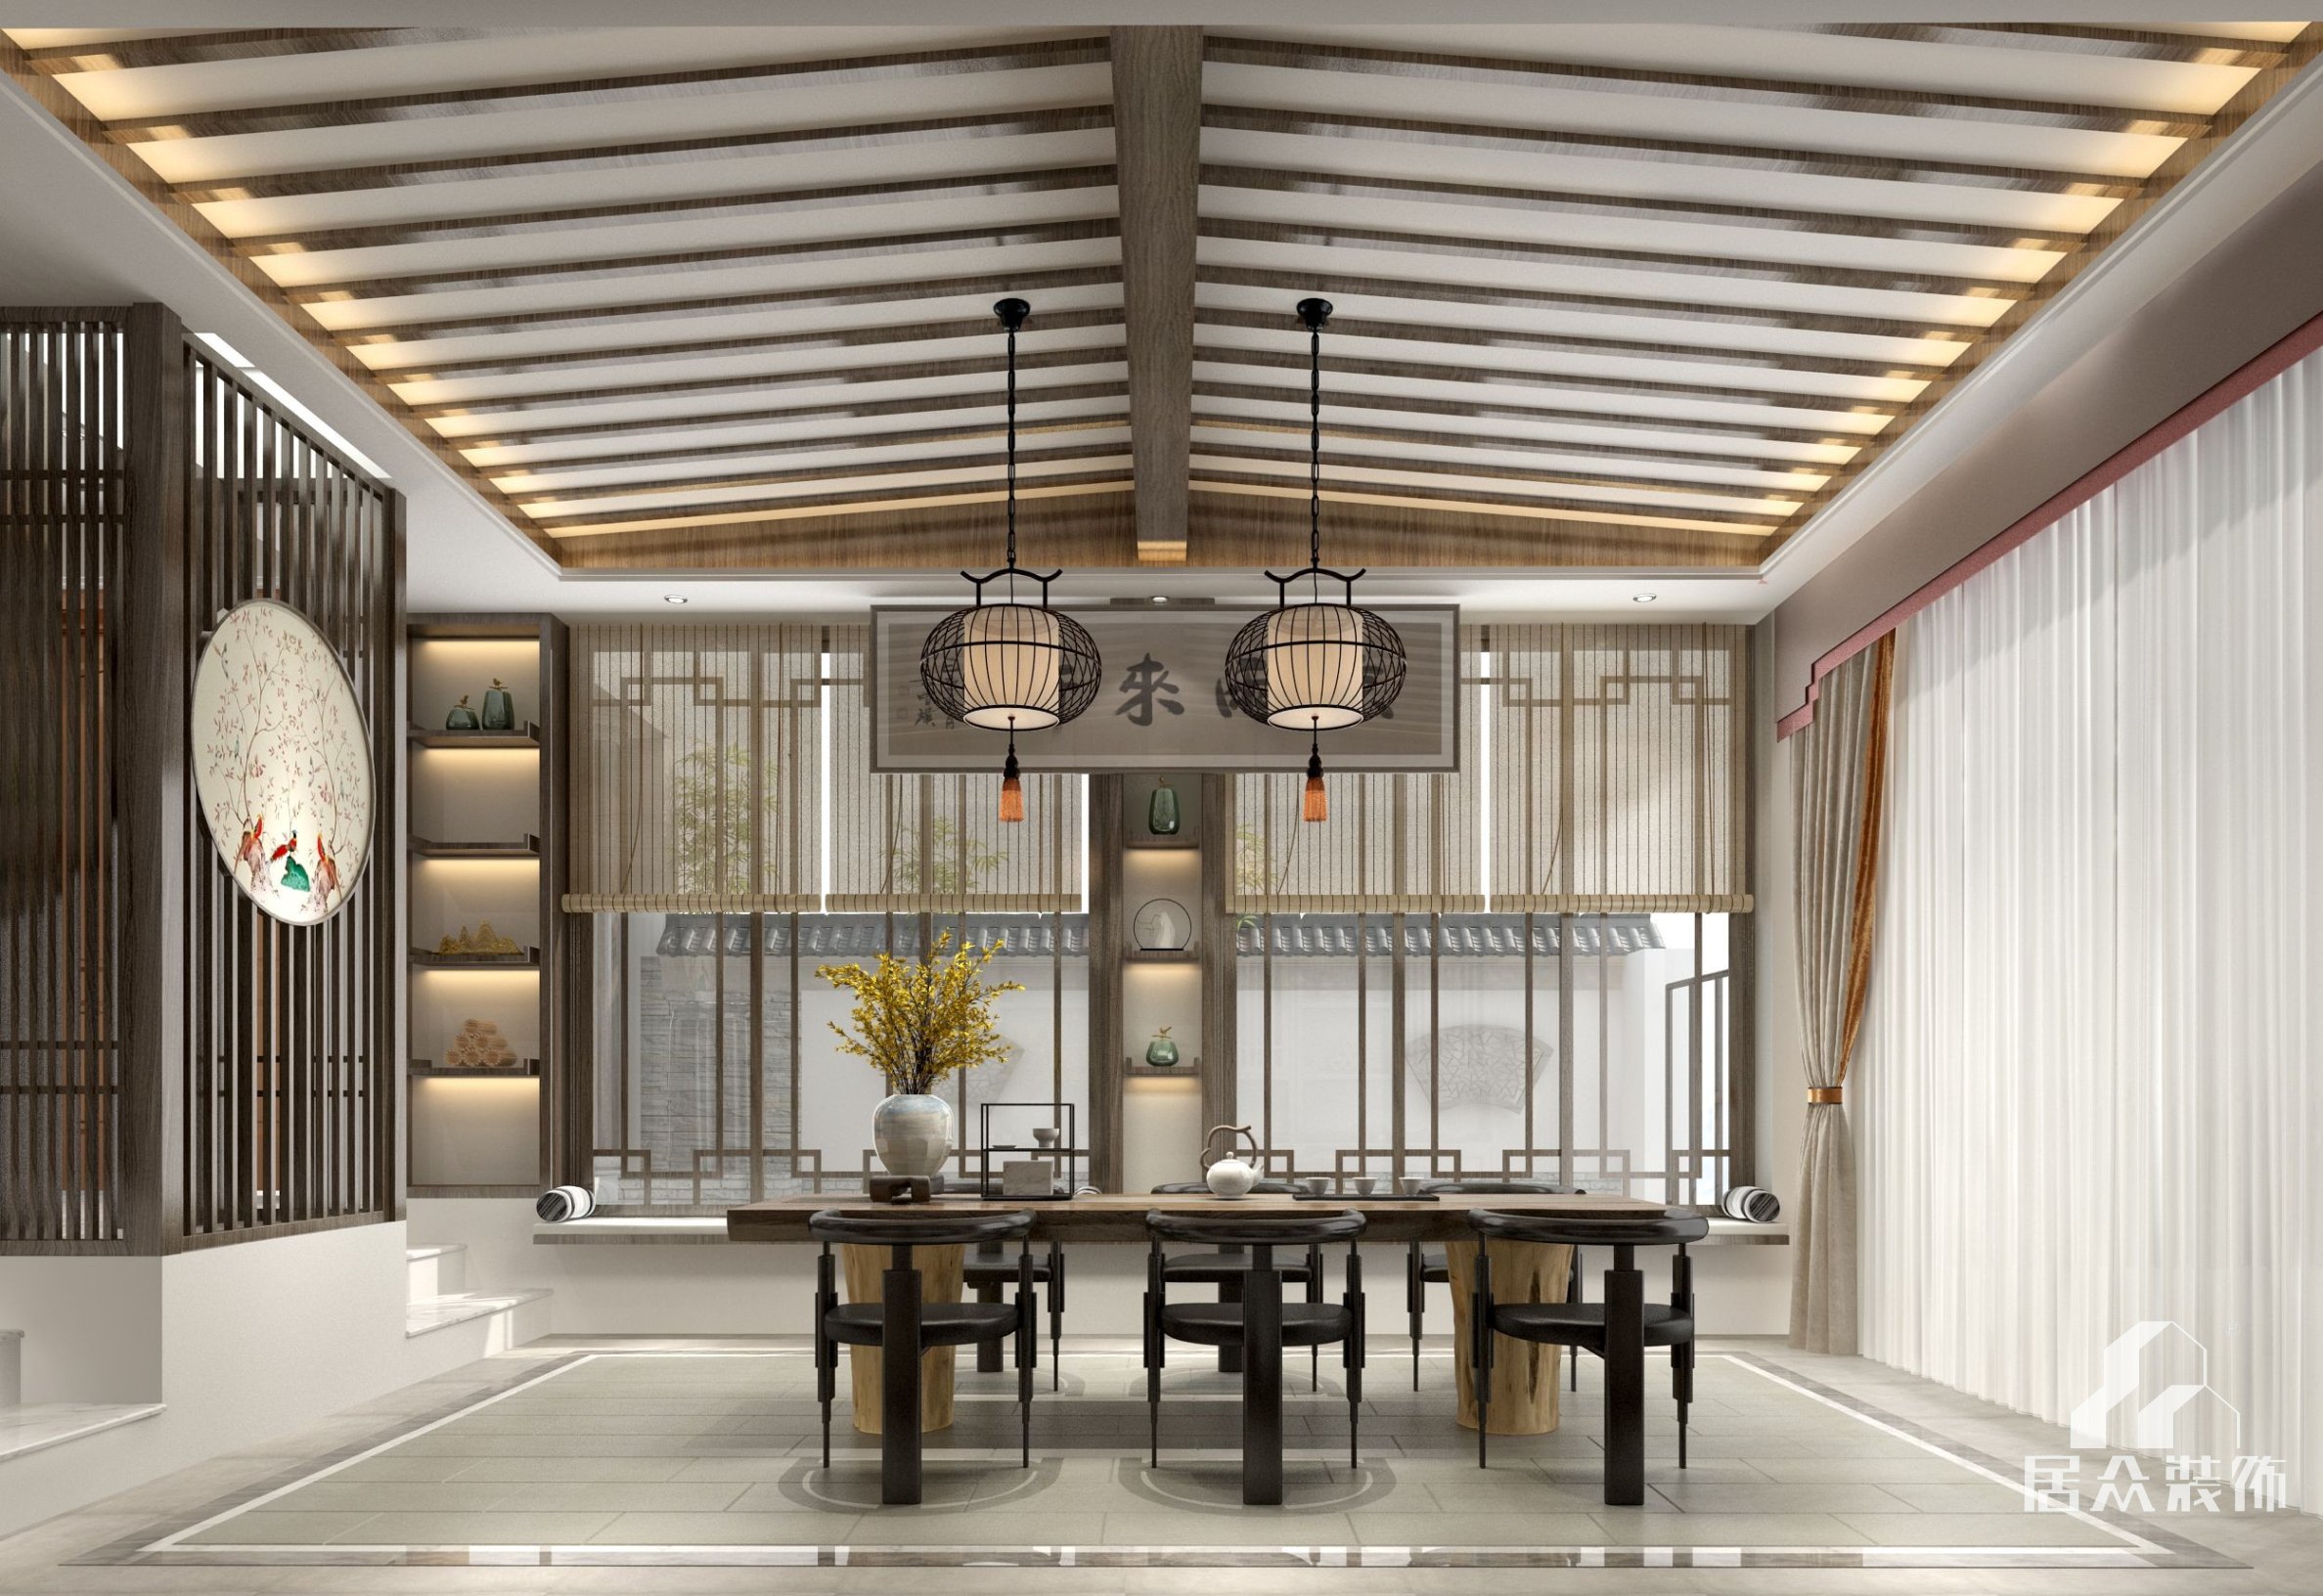 万科棠樾600平方米中式风格别墅装修效果图